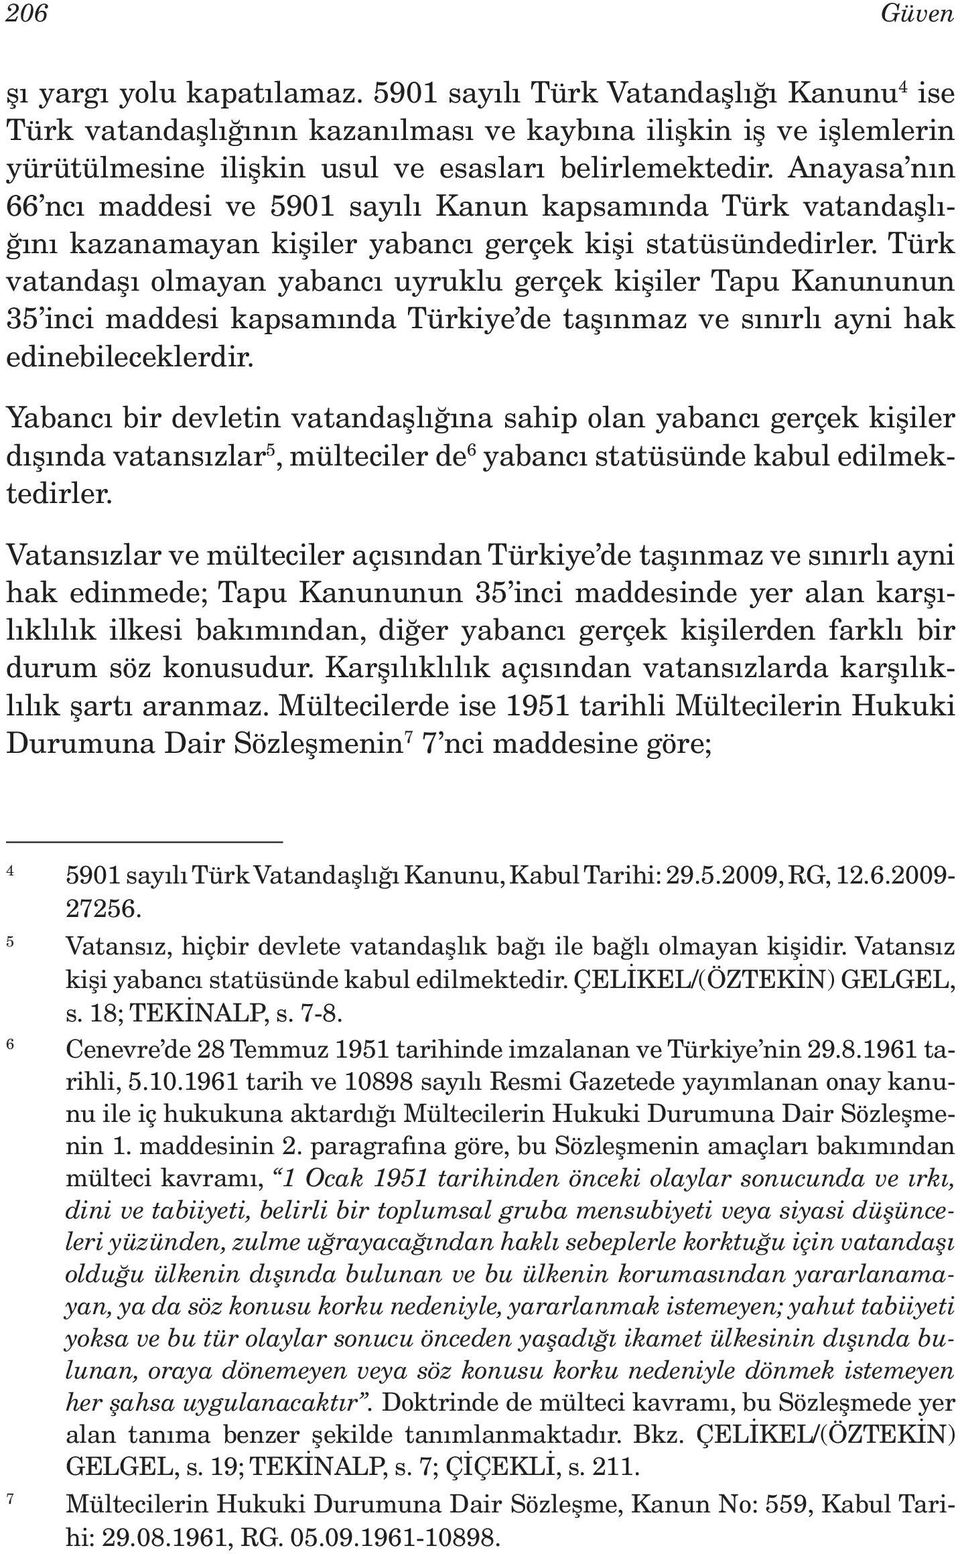 Anayasa nın 66 ncı maddesi ve 5901 sayılı Kanun kapsamında Türk vatandaşlığını kazanamayan kişiler yabancı gerçek kişi statüsündedirler.